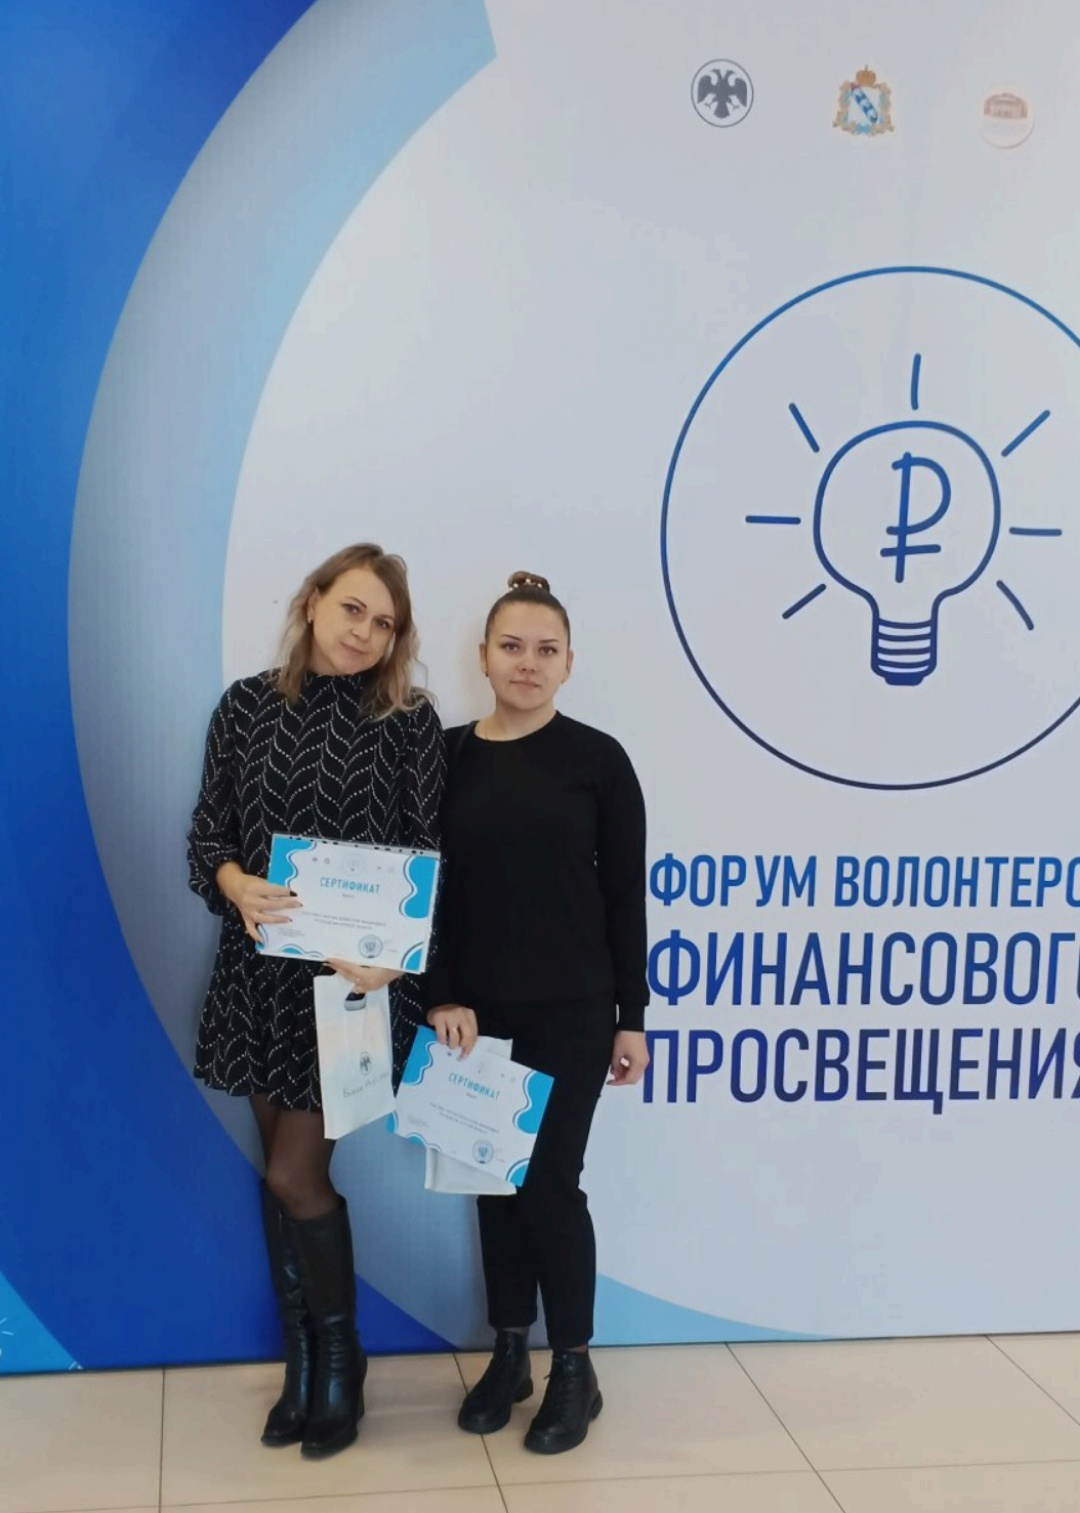 Представители Щигровского района приняли участие в Форуме волонтеров финансового просвещения Курской области.